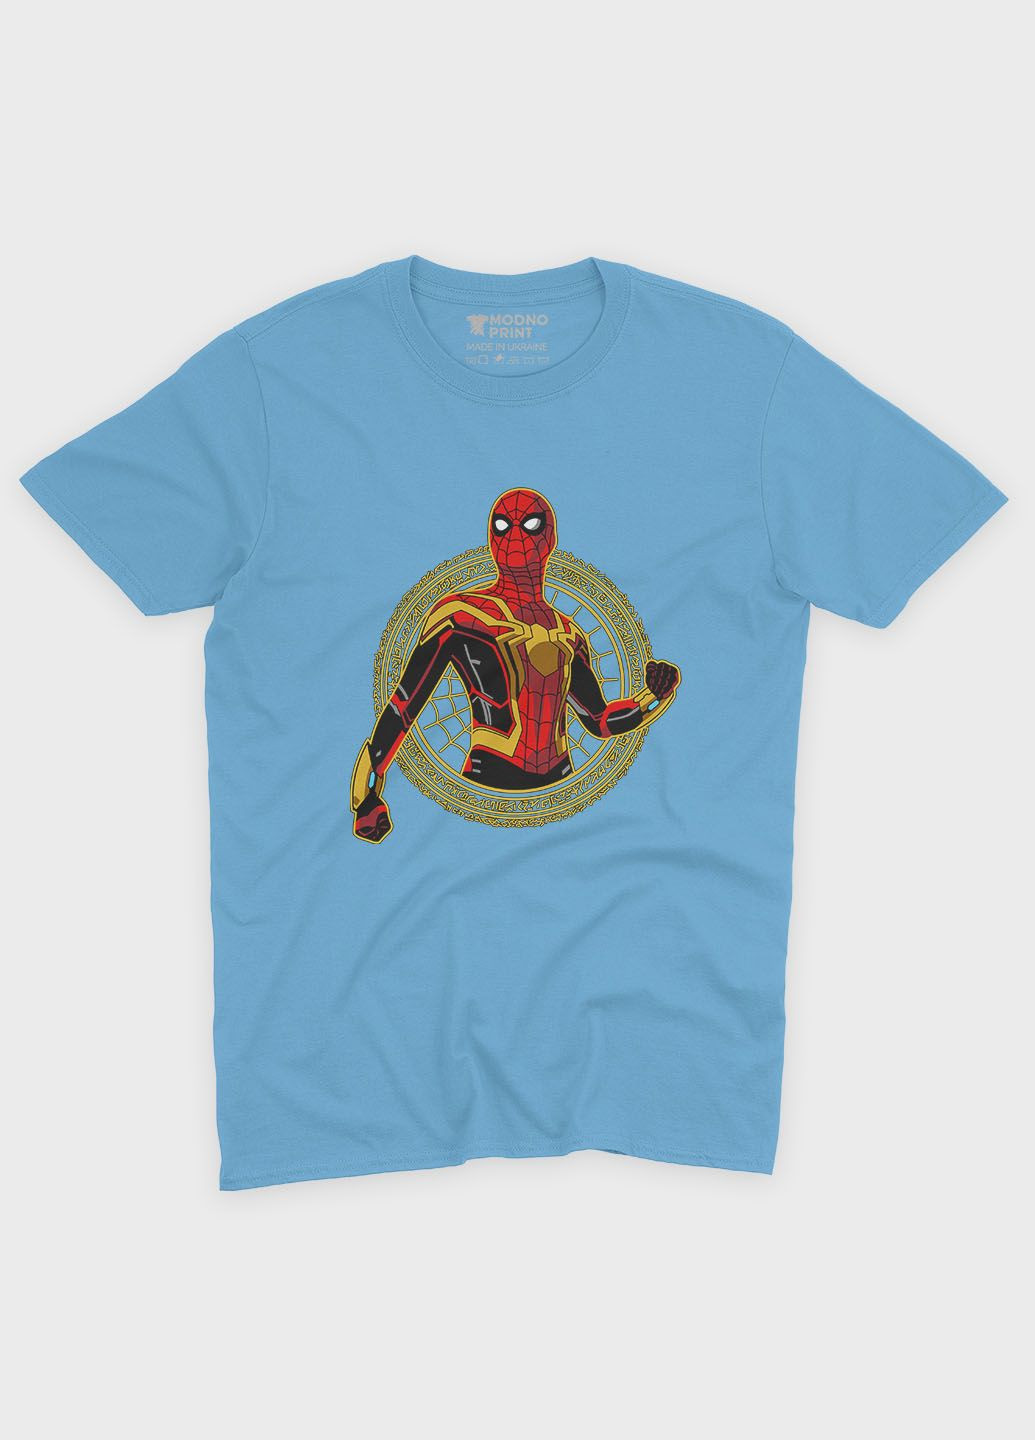 Блакитна демісезонна футболка для дівчинки з принтом супергероя - людина-павук (ts001-1-lbl-006-014-076-g) Modno